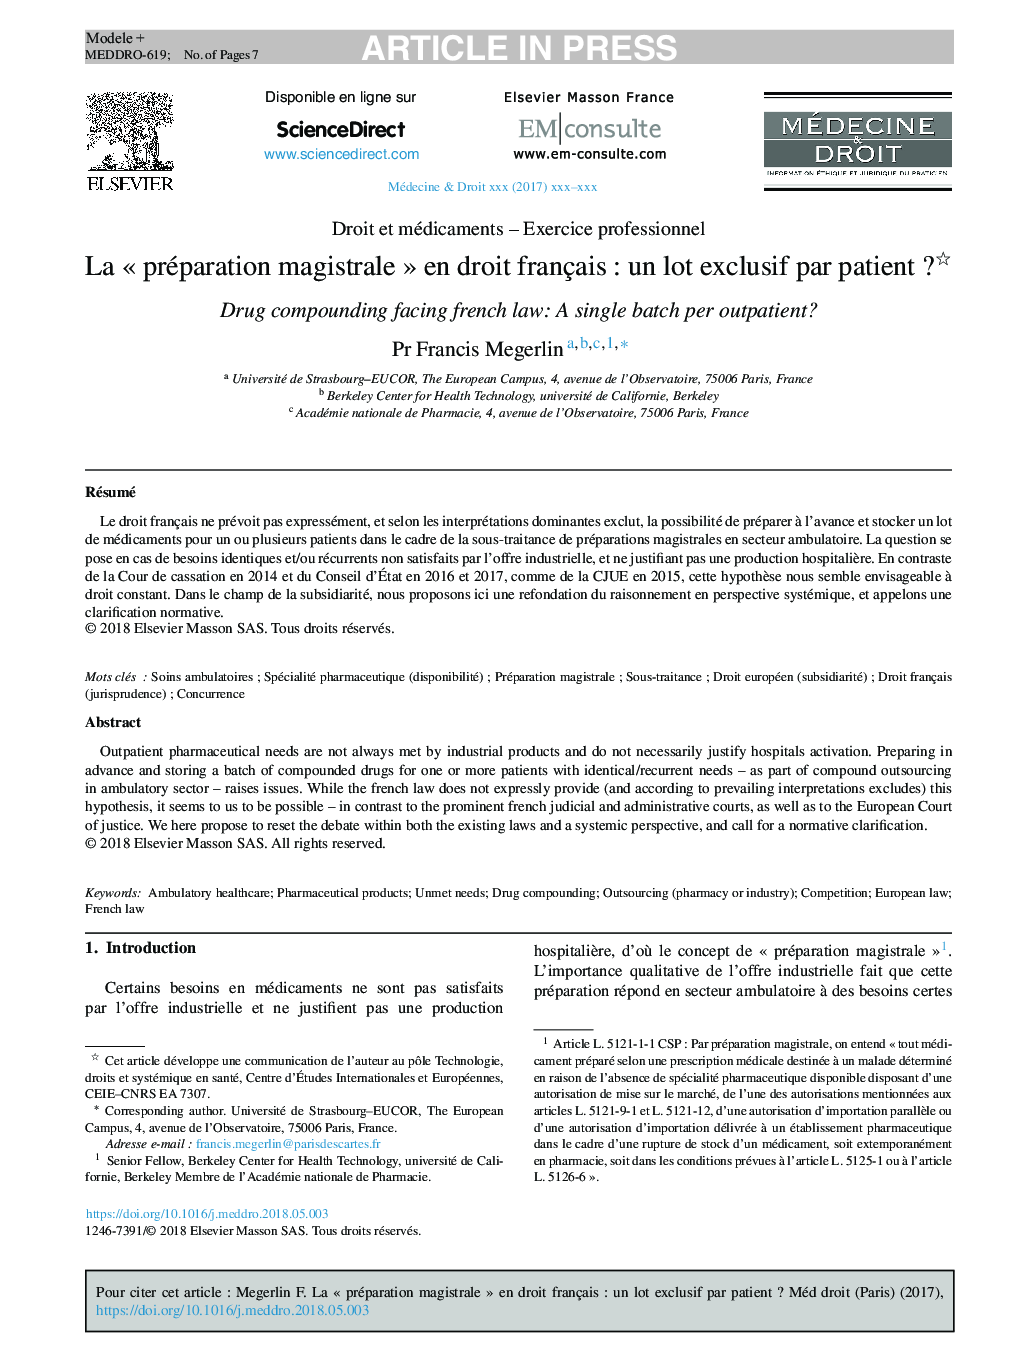 La Â«Â préparation magistraleÂ Â»Â en droit françaisÂ : un lot exclusif par patientÂ ?